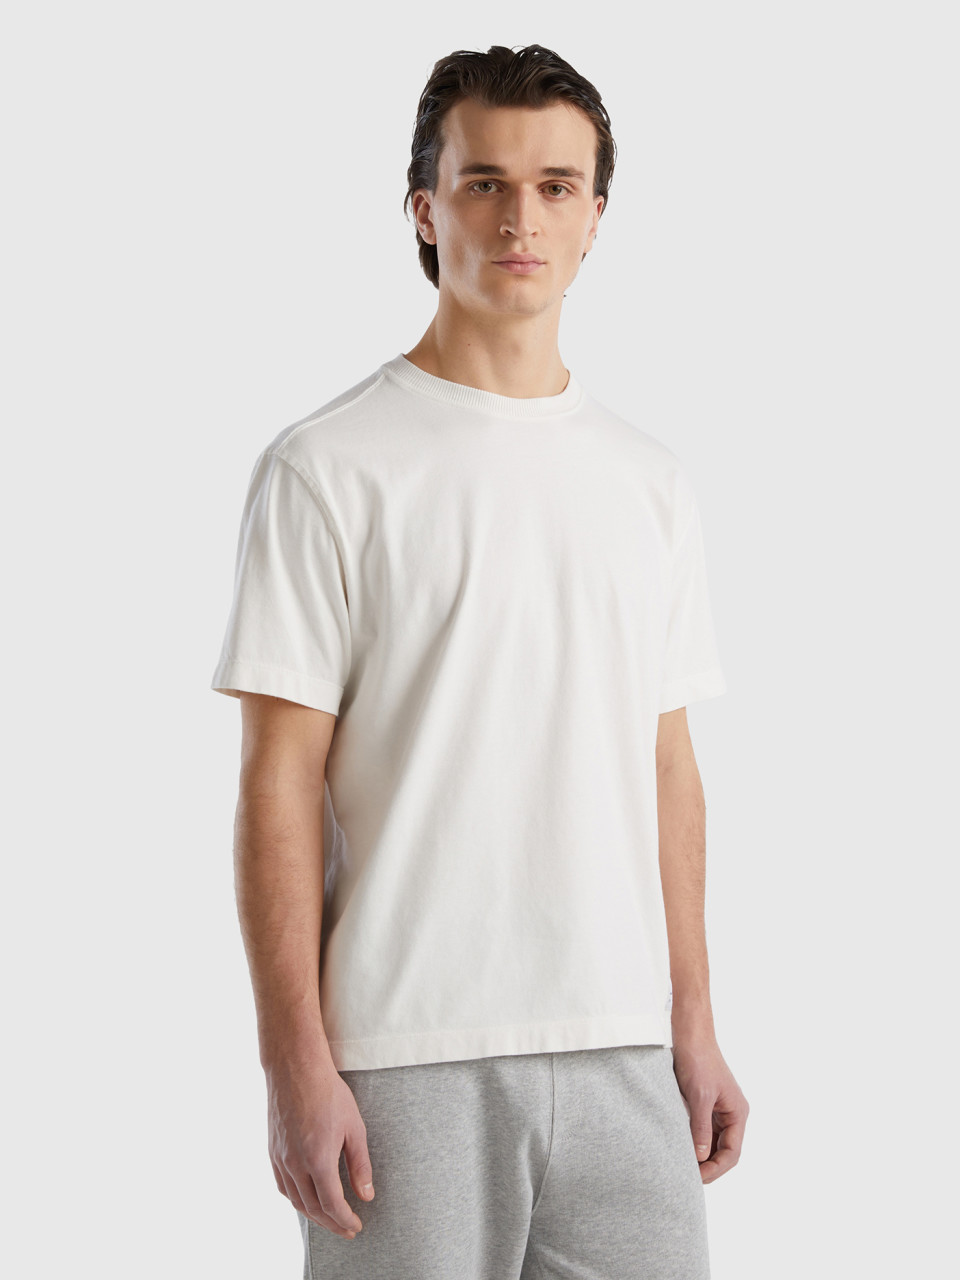 Benetton, Rundhals-t-shirt 100% Bio-baumwolle, Cremeweiss, male